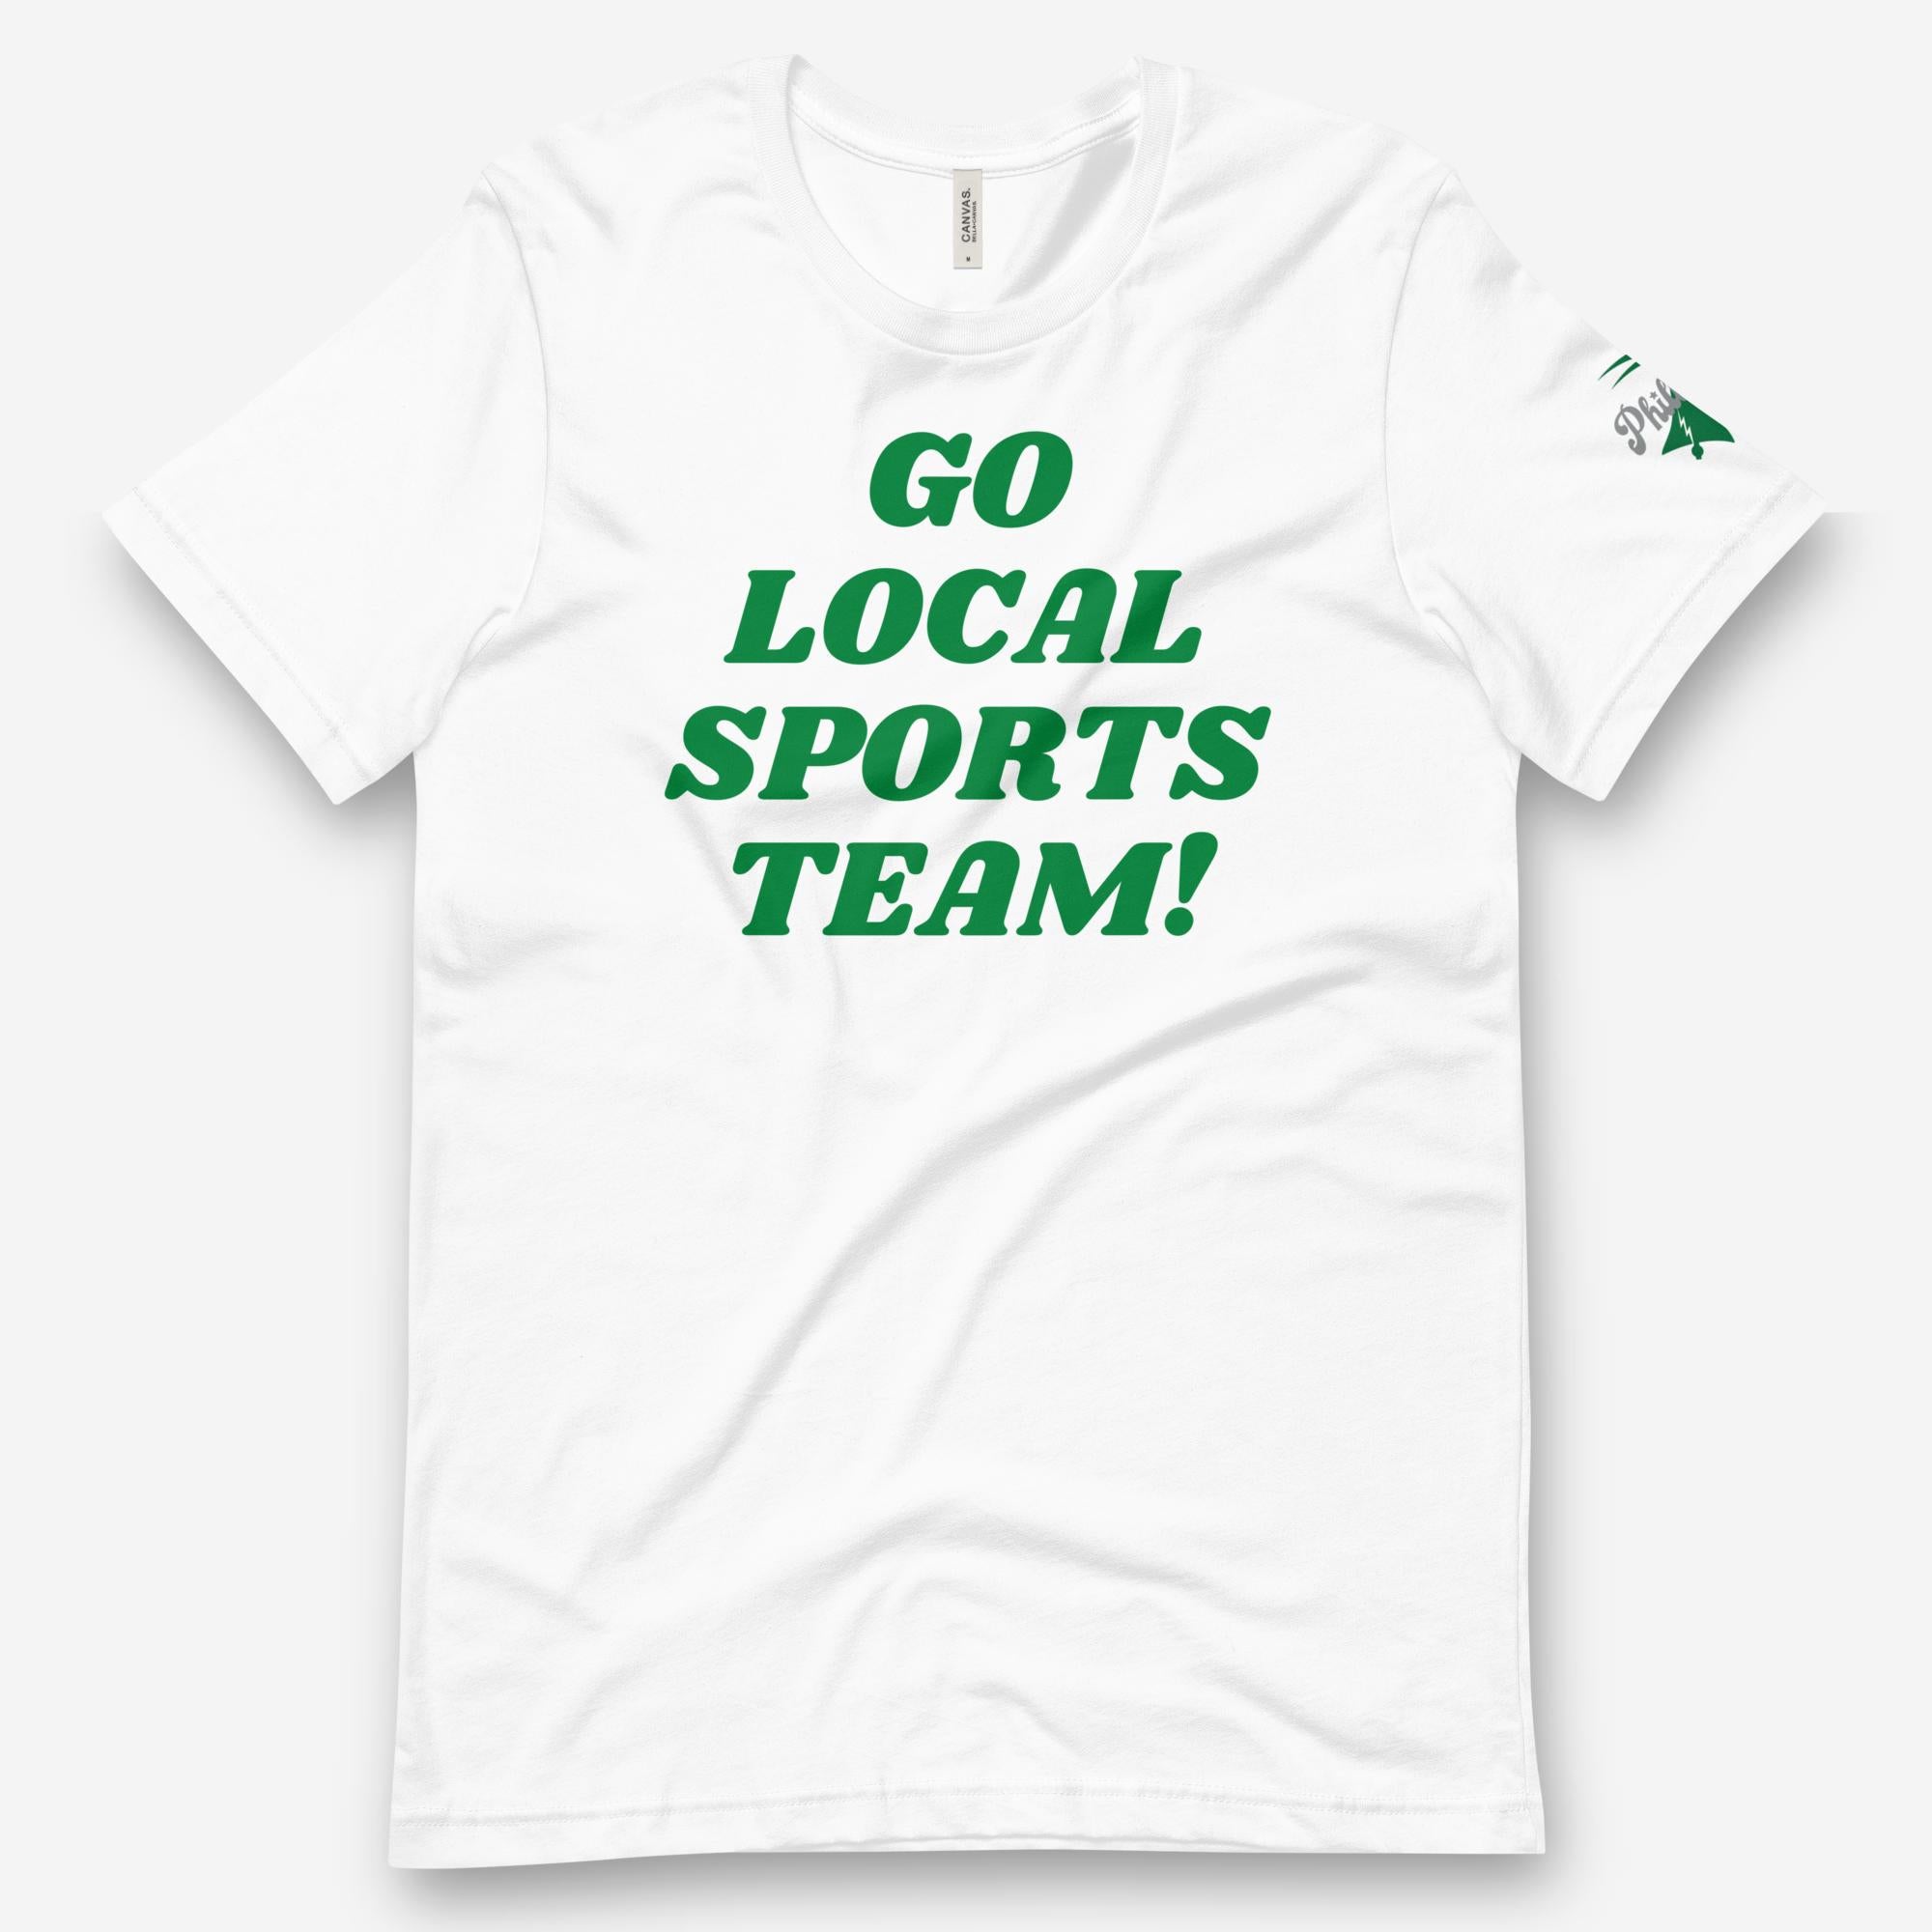 "Go Local Sports Team!" Tee